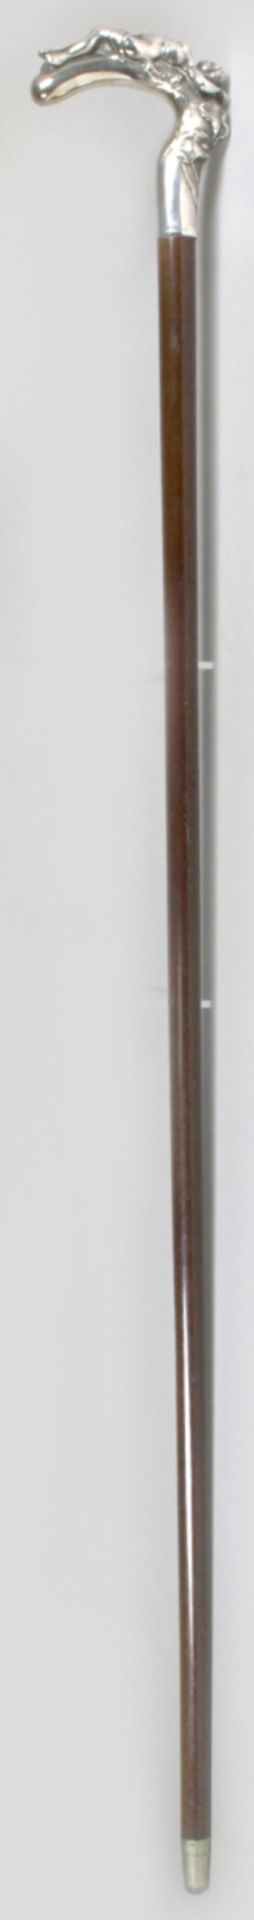 Spazierstock, um 1910, dunkelbrauner Holzschaft, Griff aus Silber 800, verziert mitliegendem, - Bild 2 aus 4